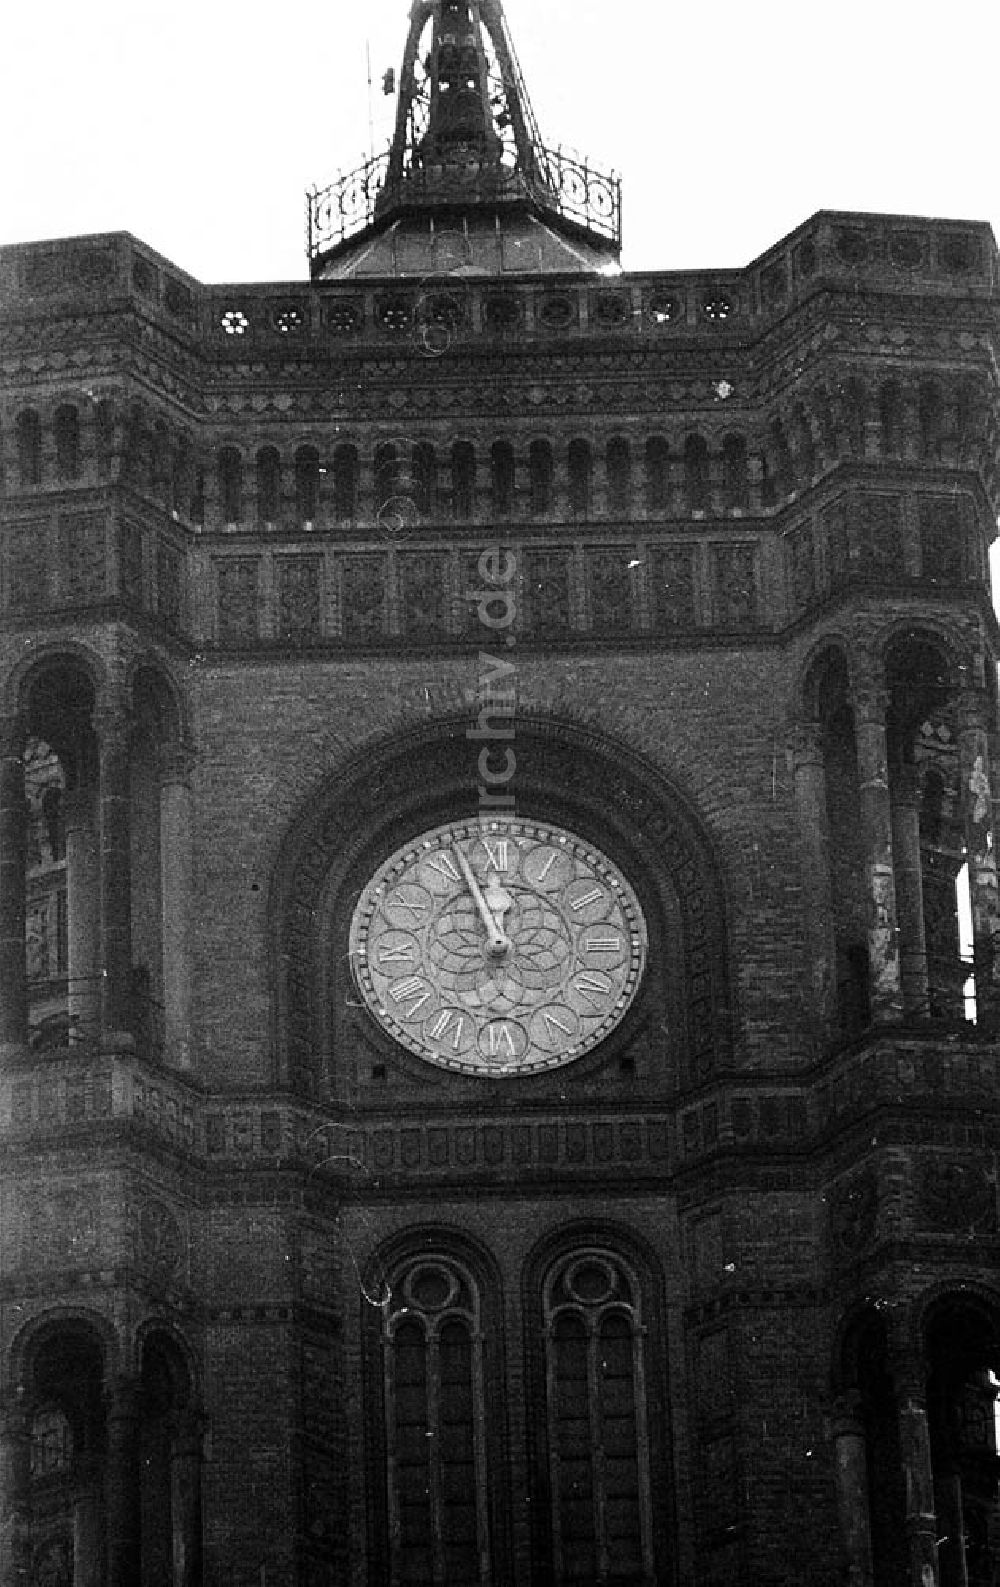 Berlin-Mitte: Uhr des Roten Rathauses in Berlin-Mitte Umschlagnr.: 337 Foto: Winkler